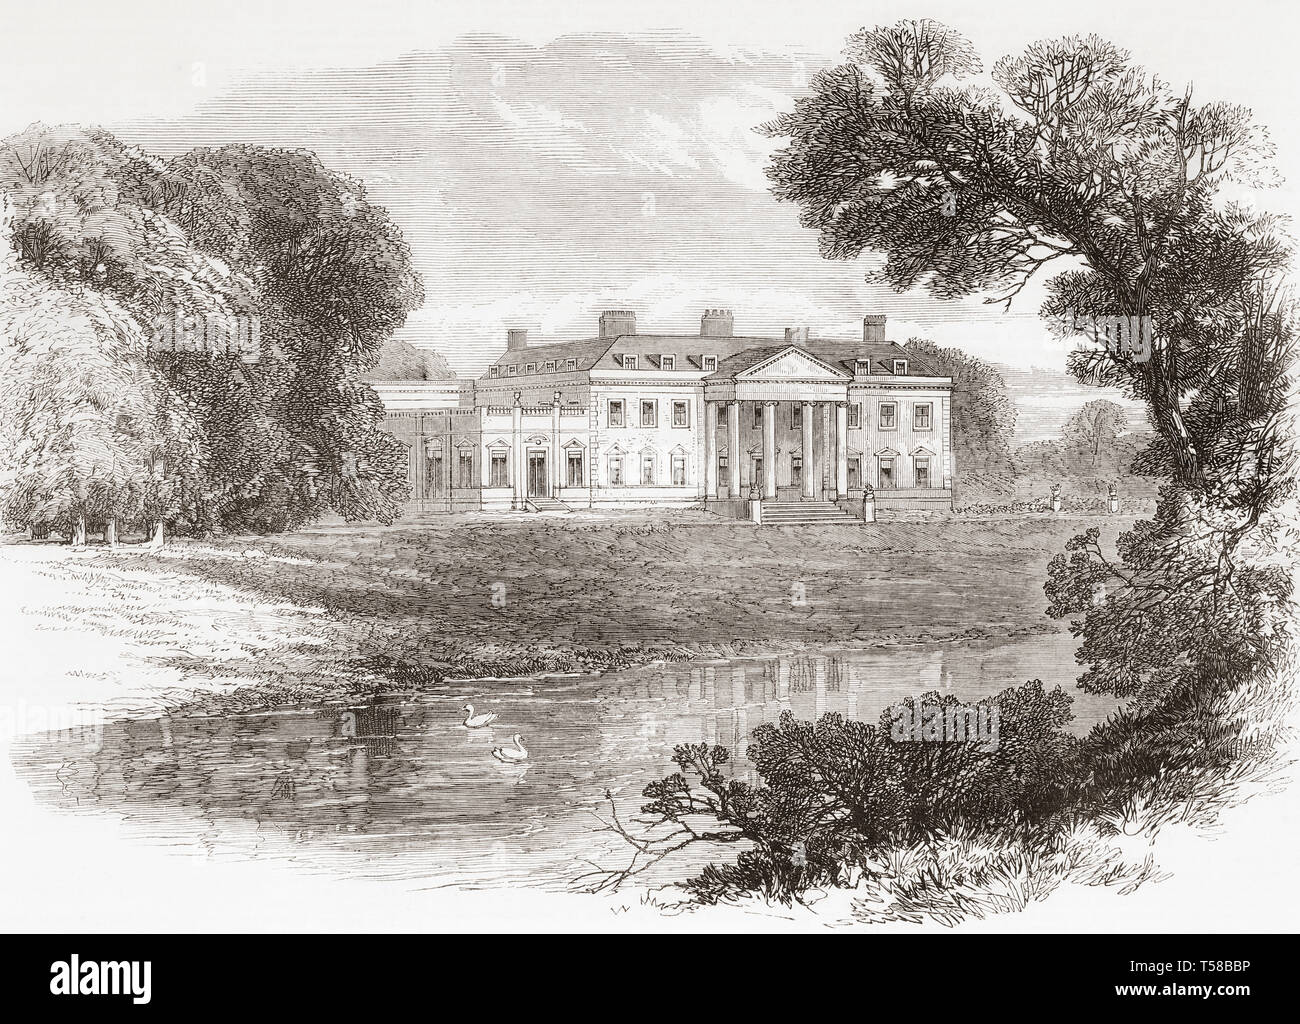 Broadlands, Romsey, Hampshire, Inghilterra. Il paese la sede e il luogo di nascita di Lord Palmerston. Dal Illustrated London News, pubblicato 1865. Foto Stock